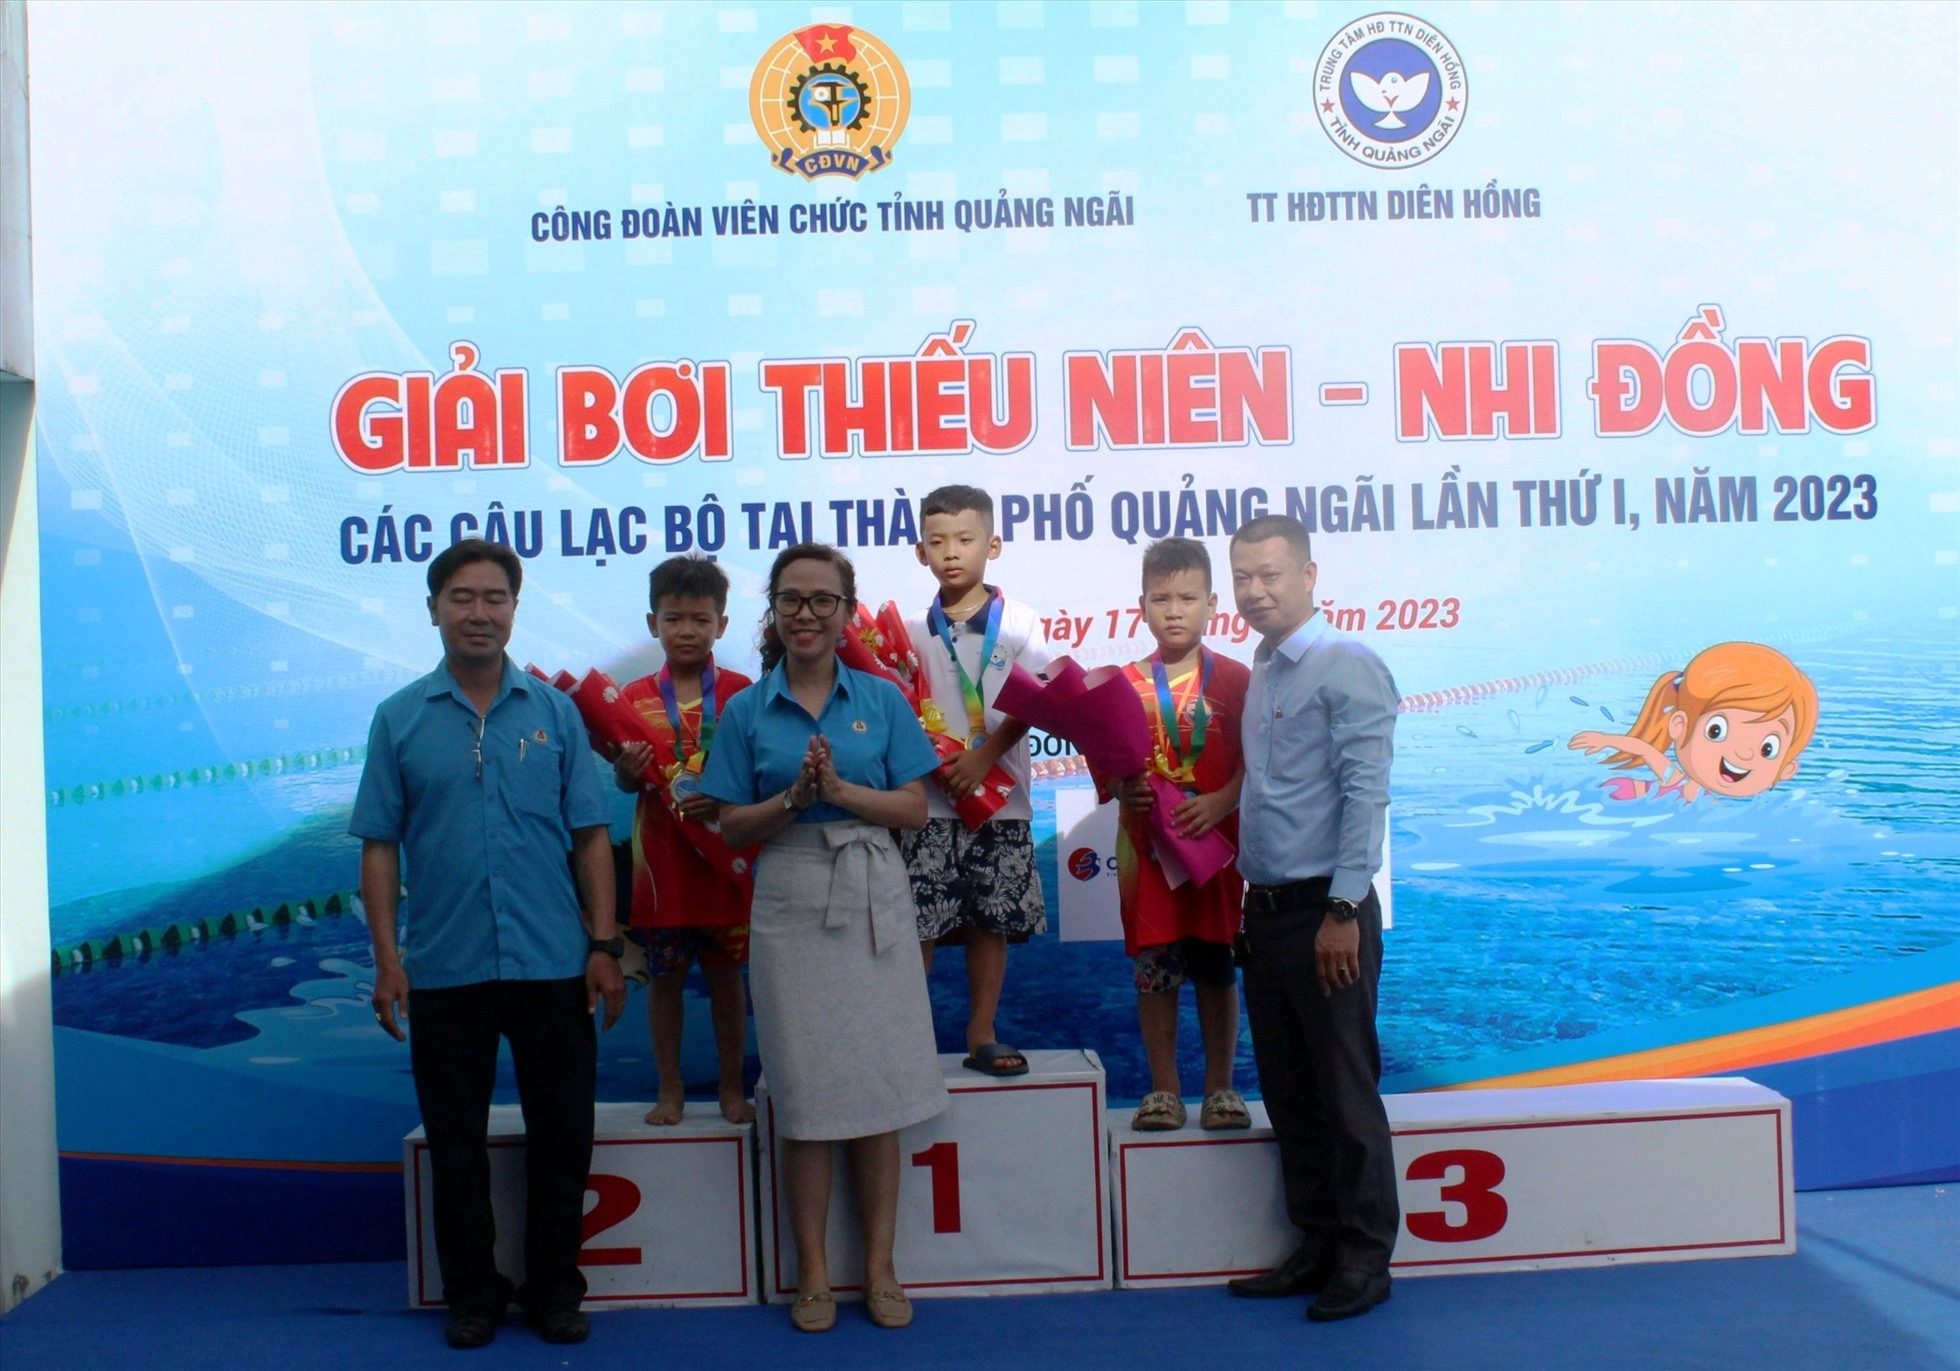 Ban tổ chức trao giải cho các vận động viên có thành tích xuất sắc tại nội dung bơi tự do (nam) lứa tuổi 6 - 8. Ảnh: Ngọc Viên